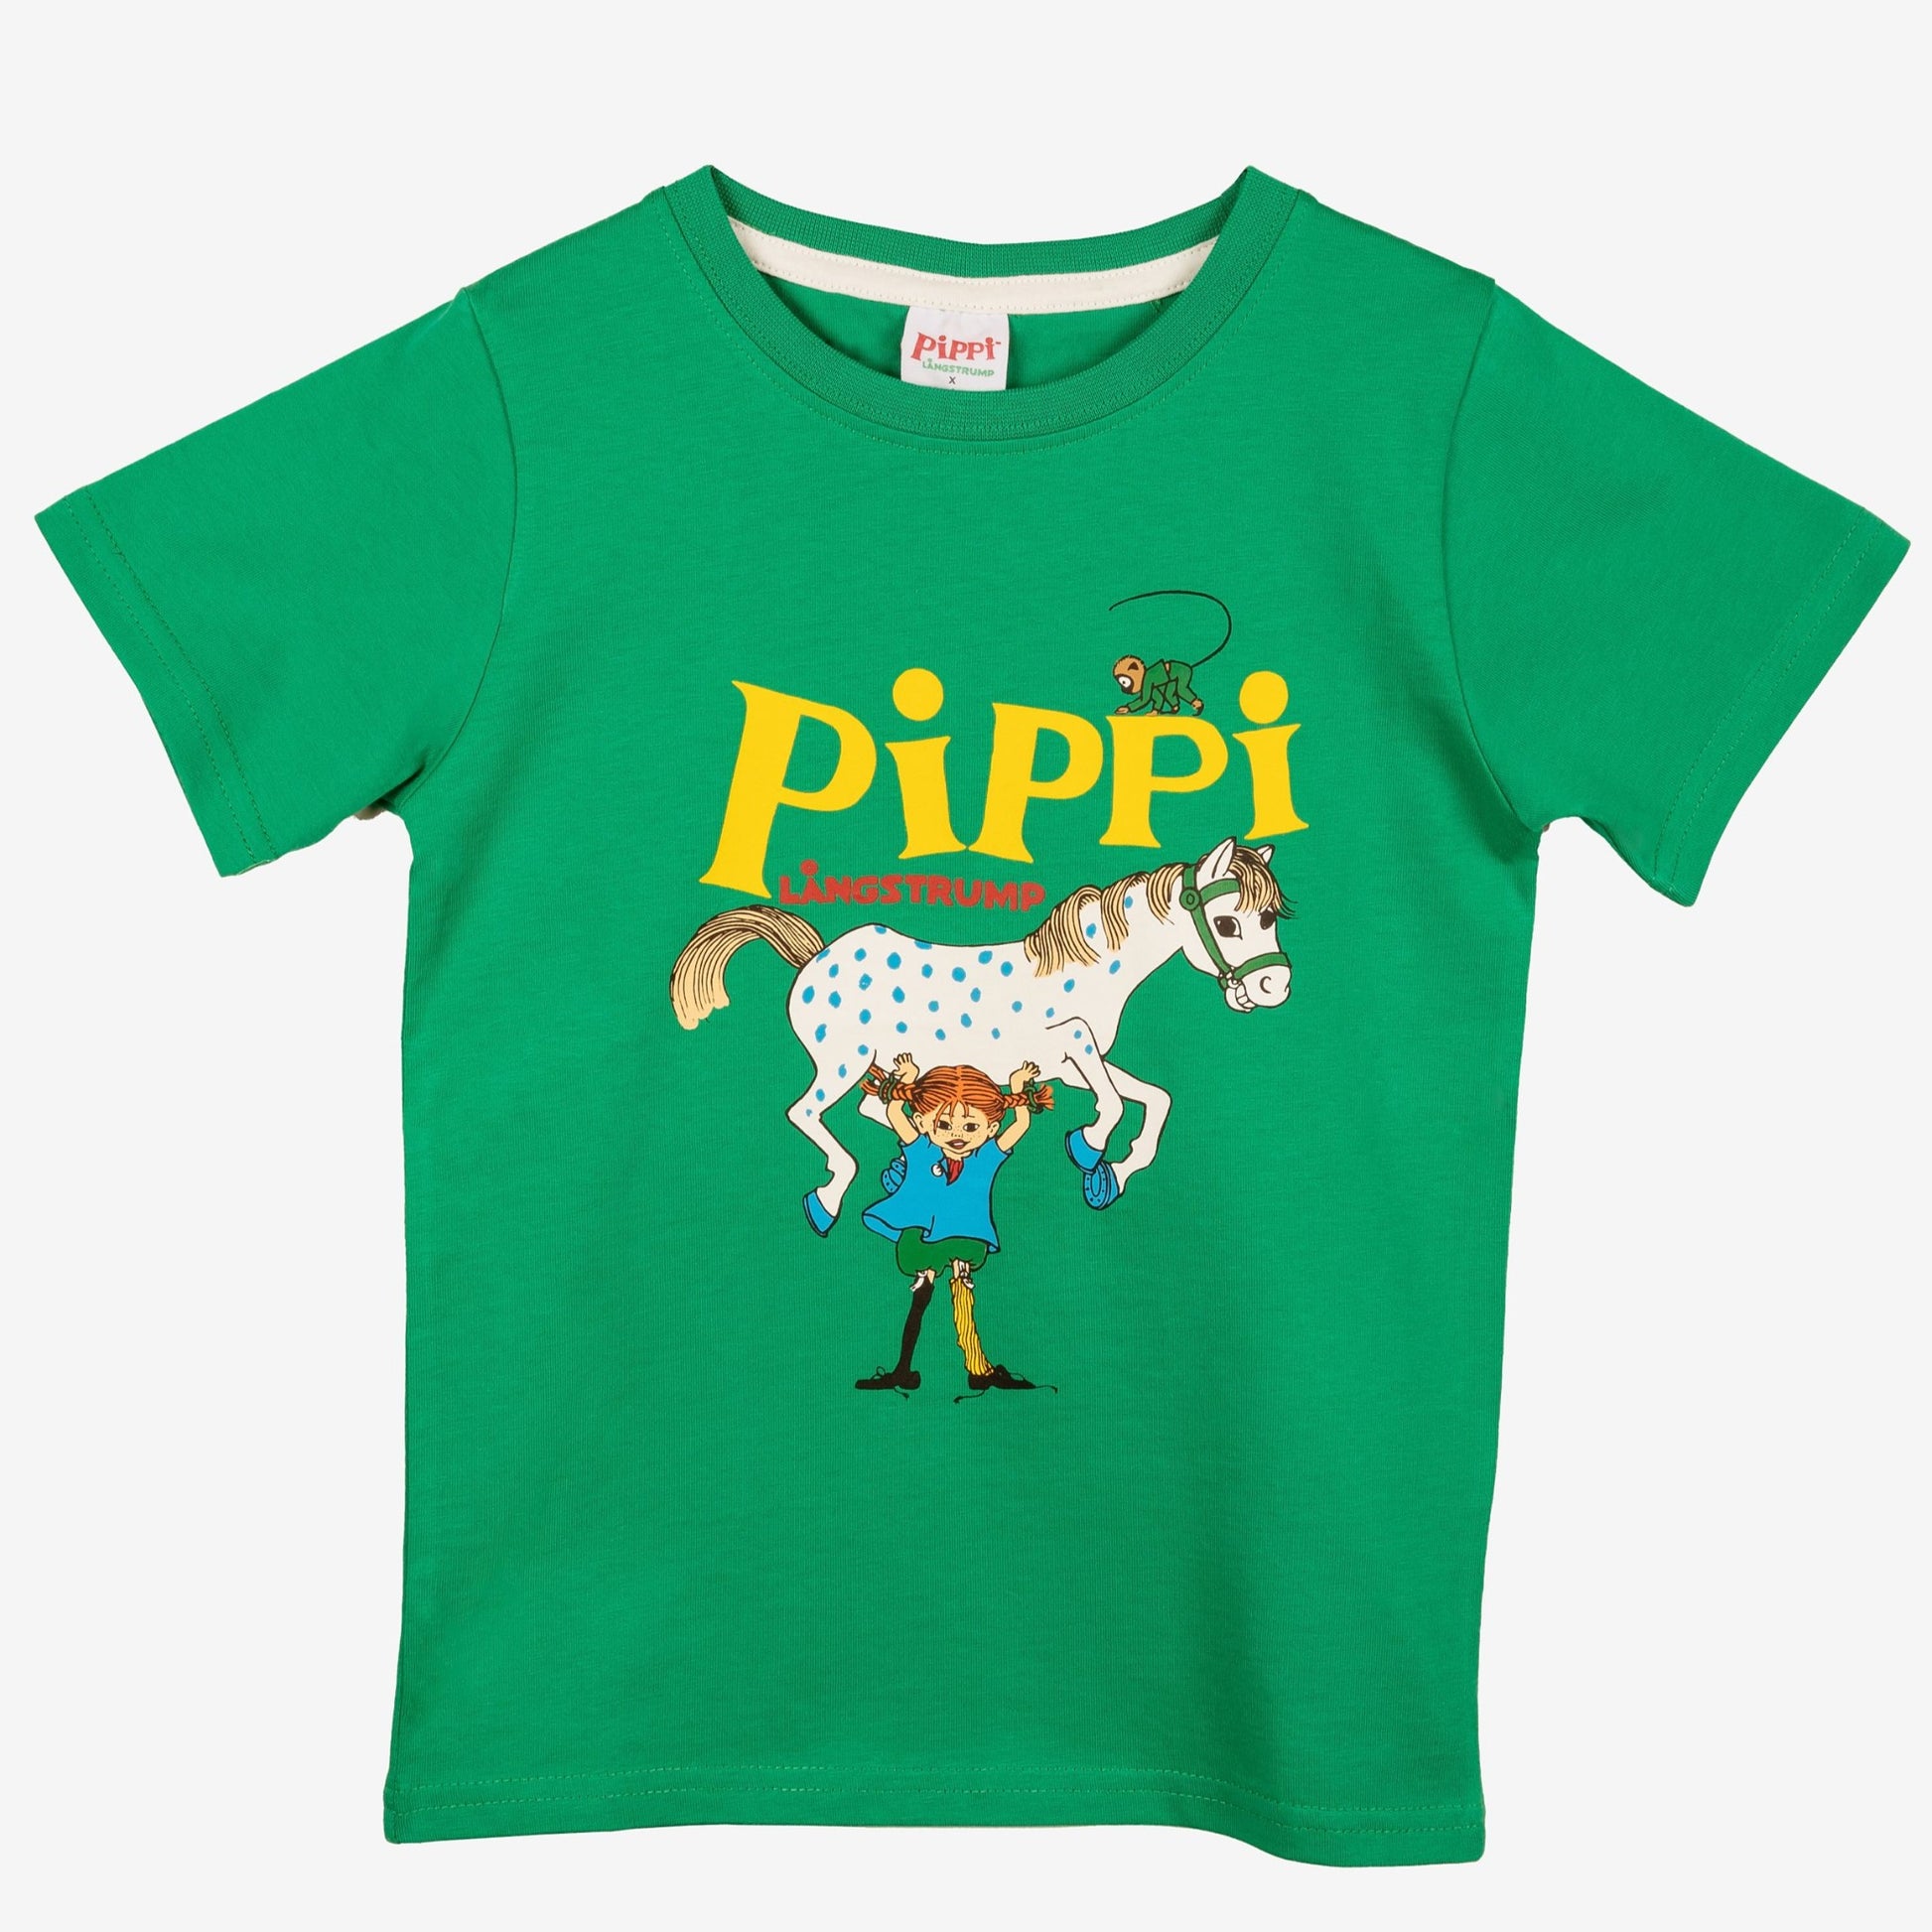 Pippi Longstocking Kids T-Shirt, Green (8914068767007)